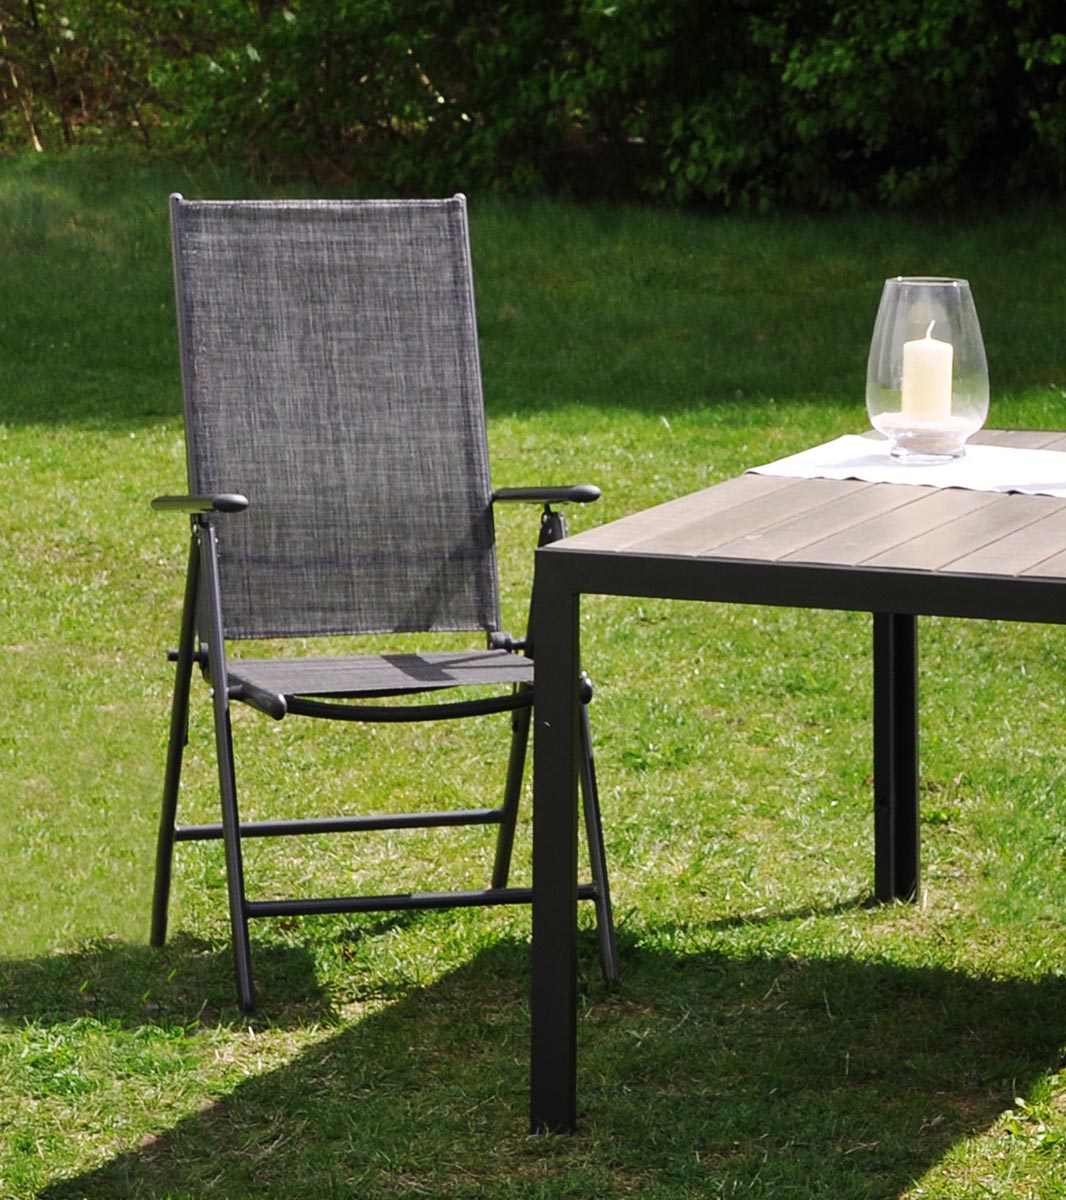 E-shop Haushalt international Skládací zahradní židle z hliníku a textilenu